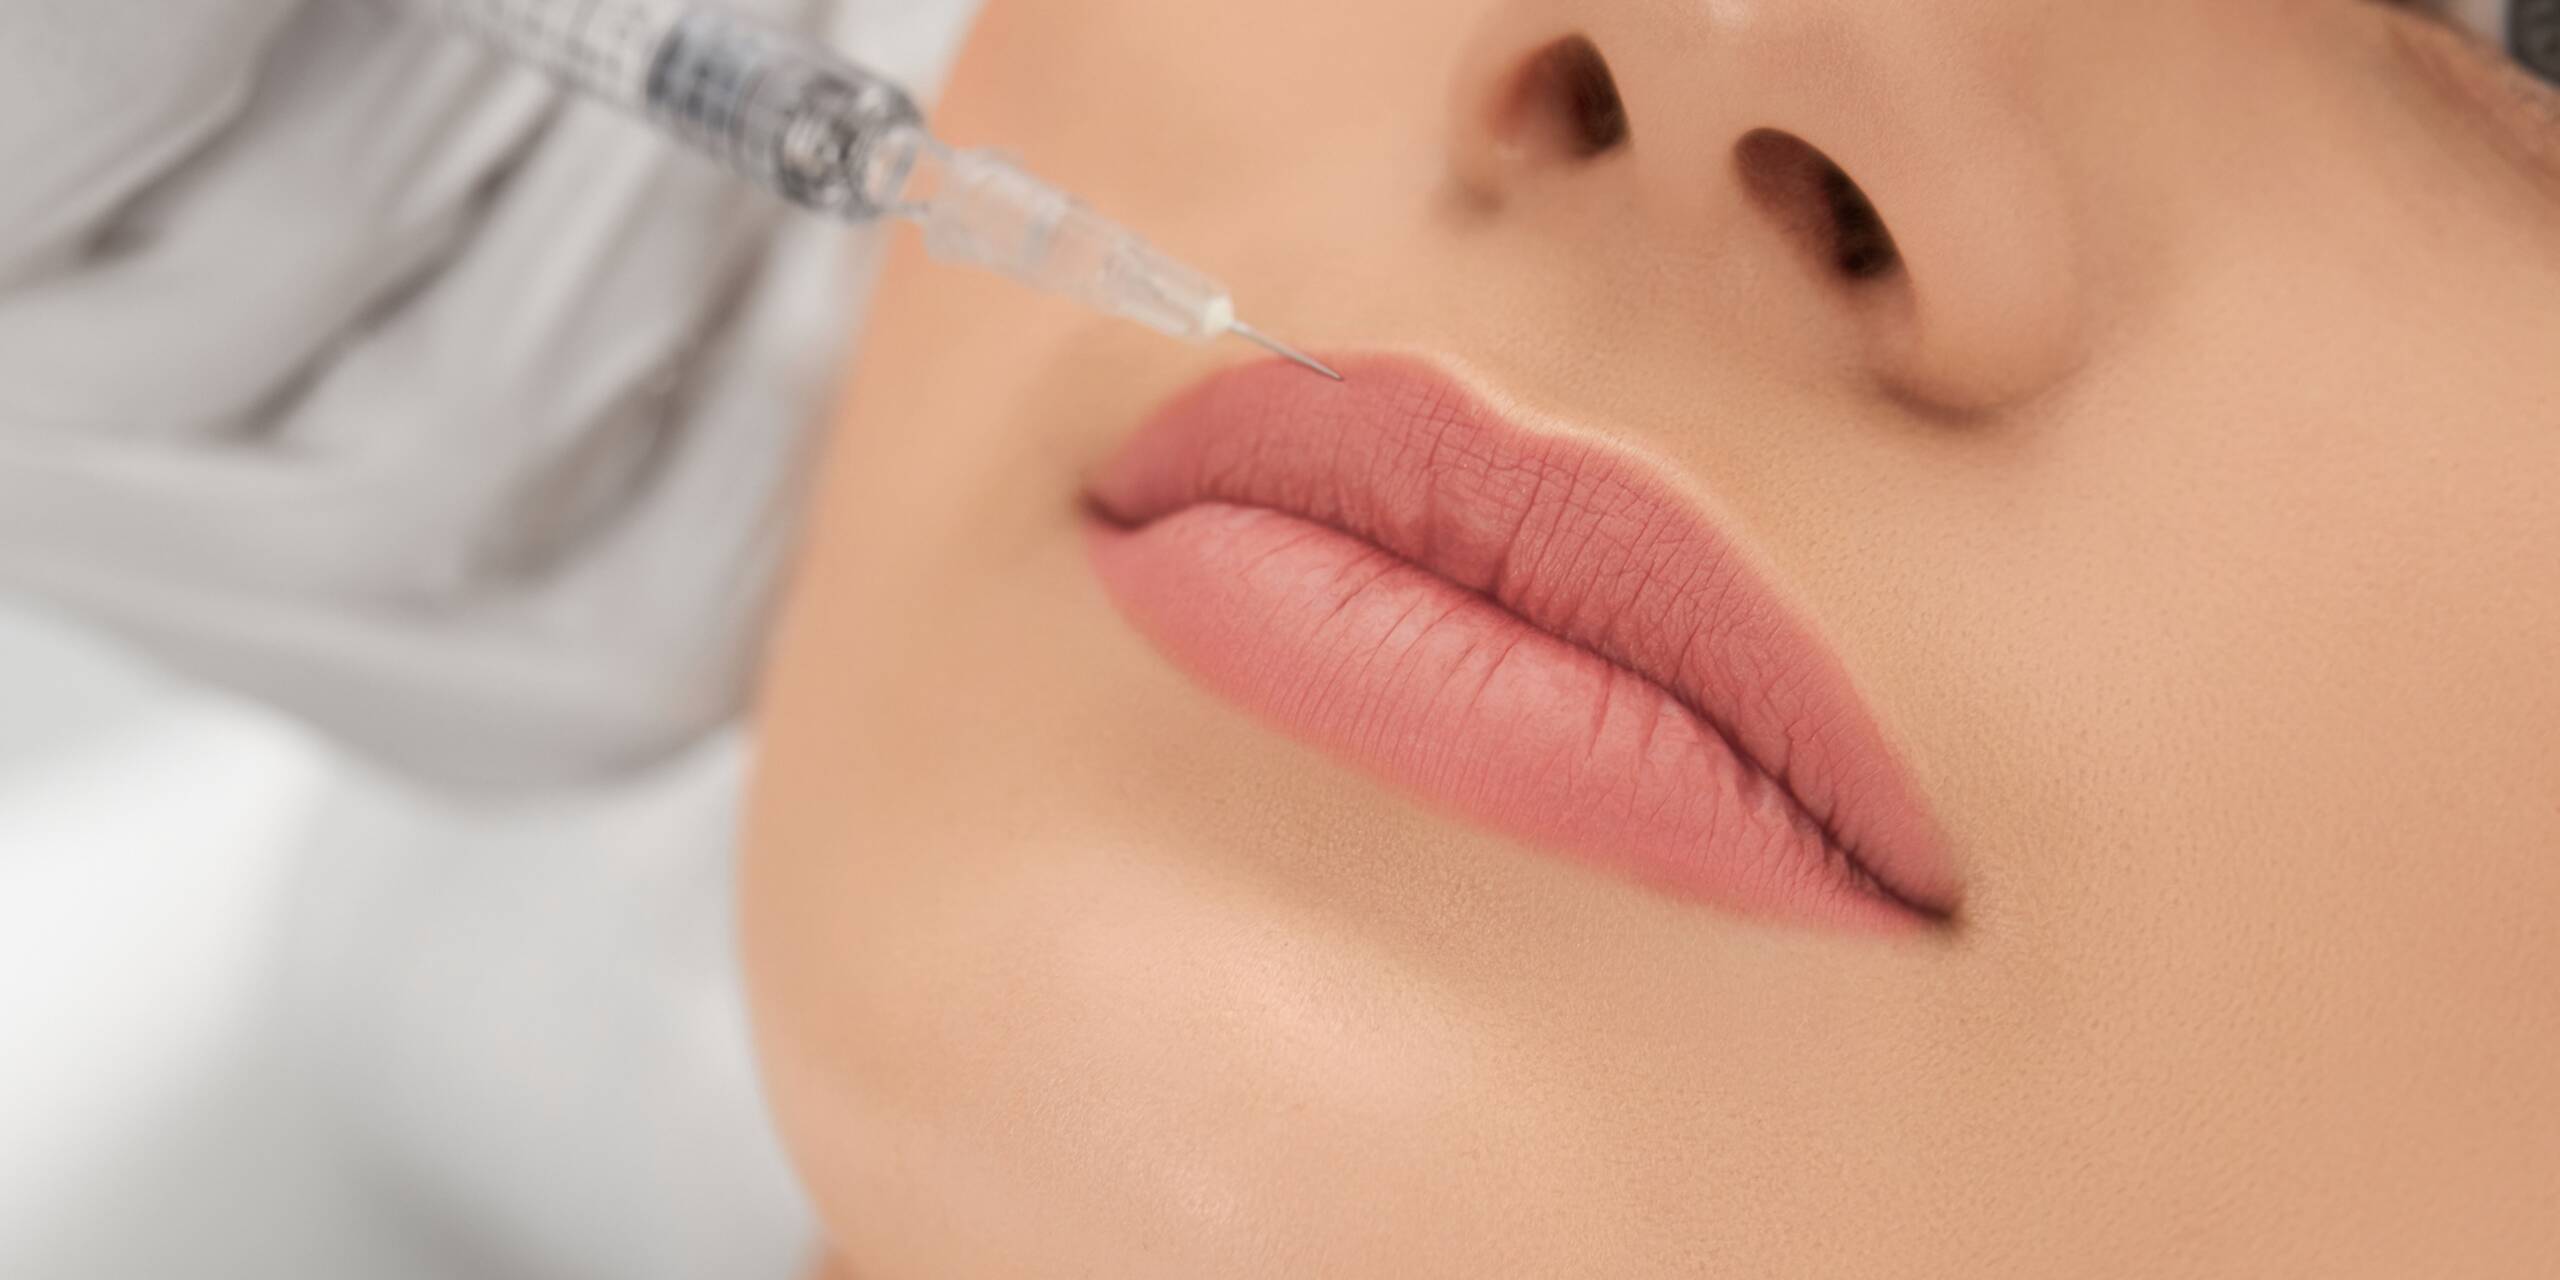 longer-lasting lip filler